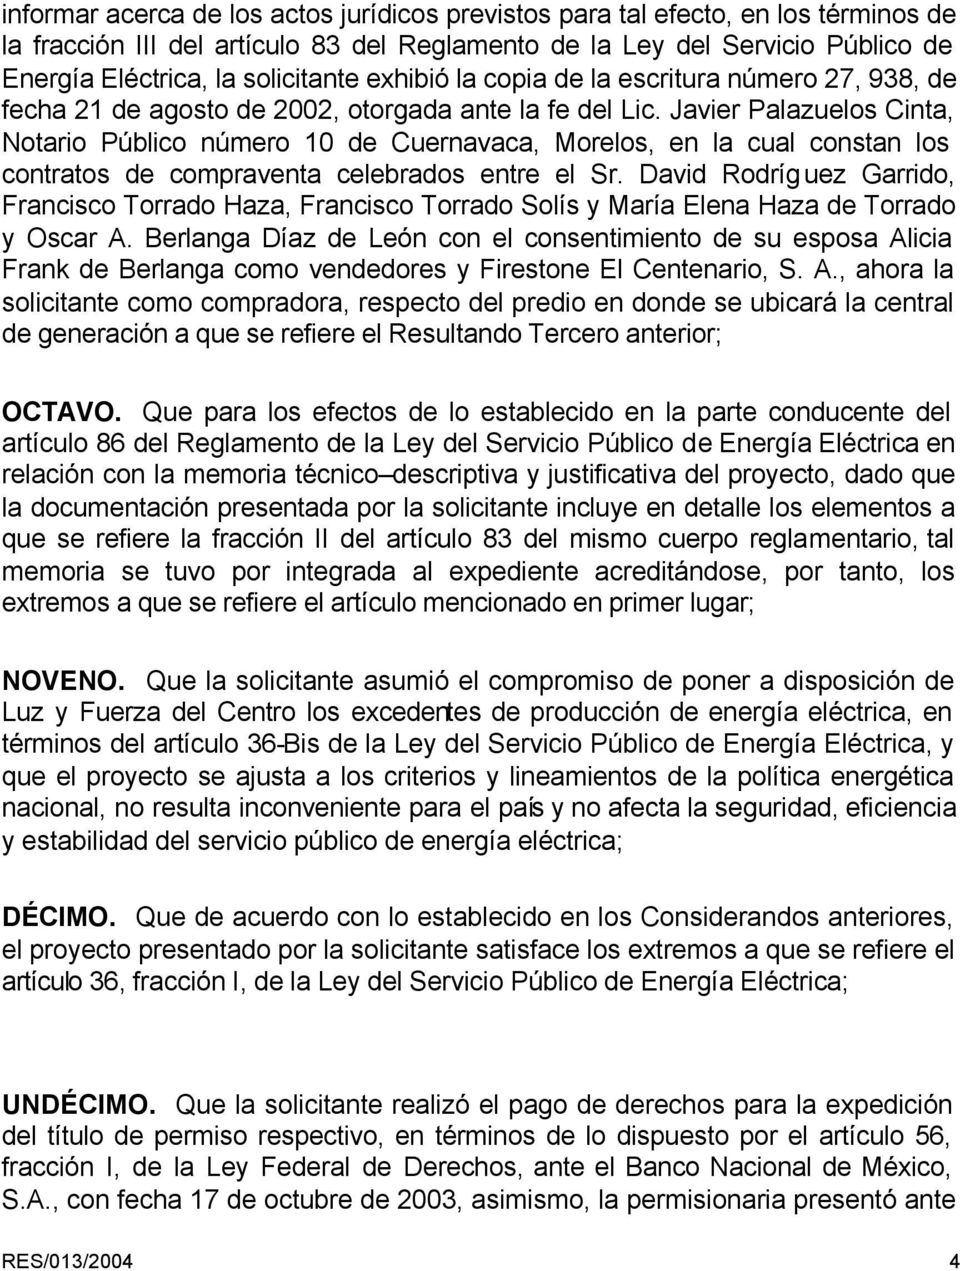 Javier Palazuelos Cinta, Notario Público número 10 de Cuernavaca, Morelos, en la cual constan los contratos de compraventa celebrados entre el Sr.